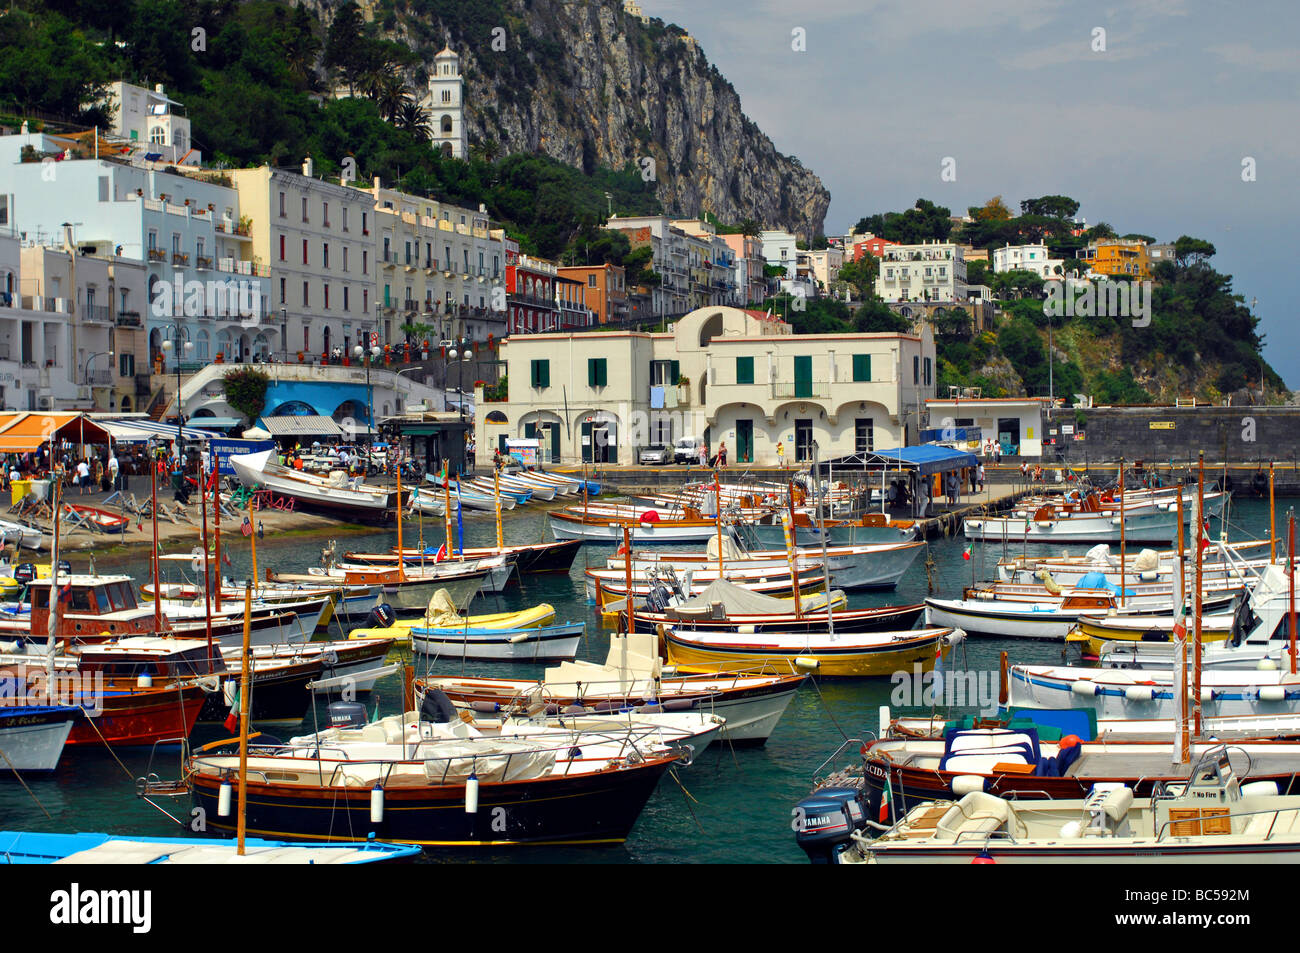 Marina Grande on the Isle of Capri, Italy Stock Photo